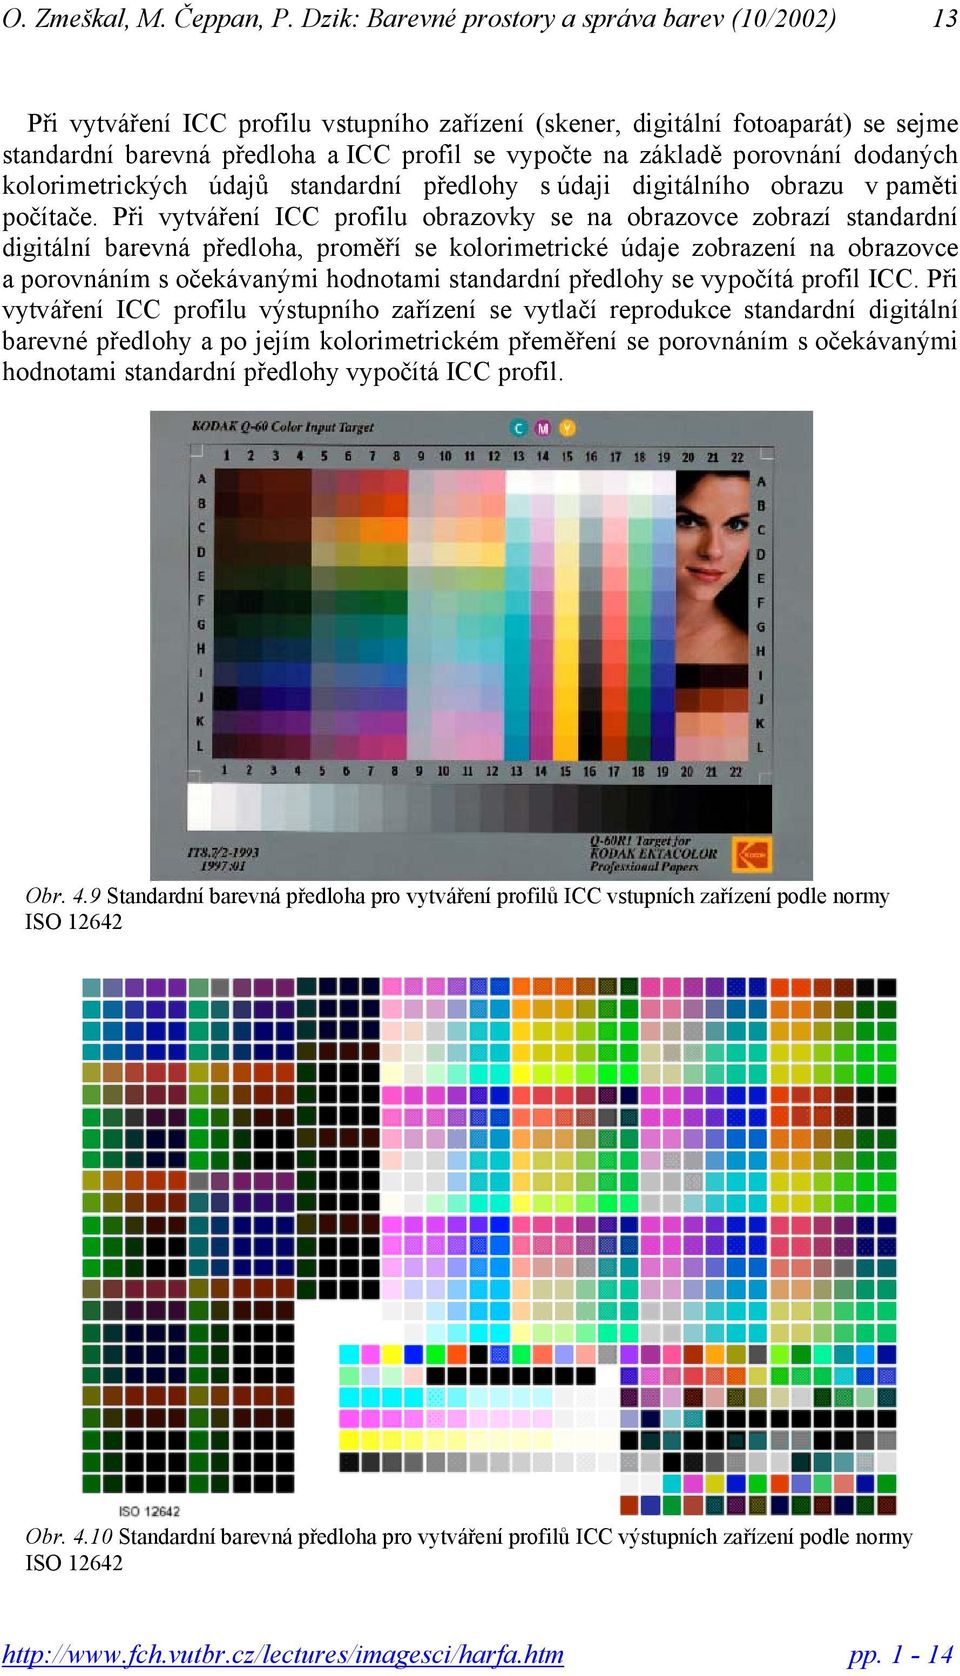 Při vytváření ICC profilu obrazovky se na obrazovce zobrazí standardní digitální barevná předloha proměří se kolorimetrické údaje zobrazení na obrazovce a porovnáním s očekávanými hodnotami